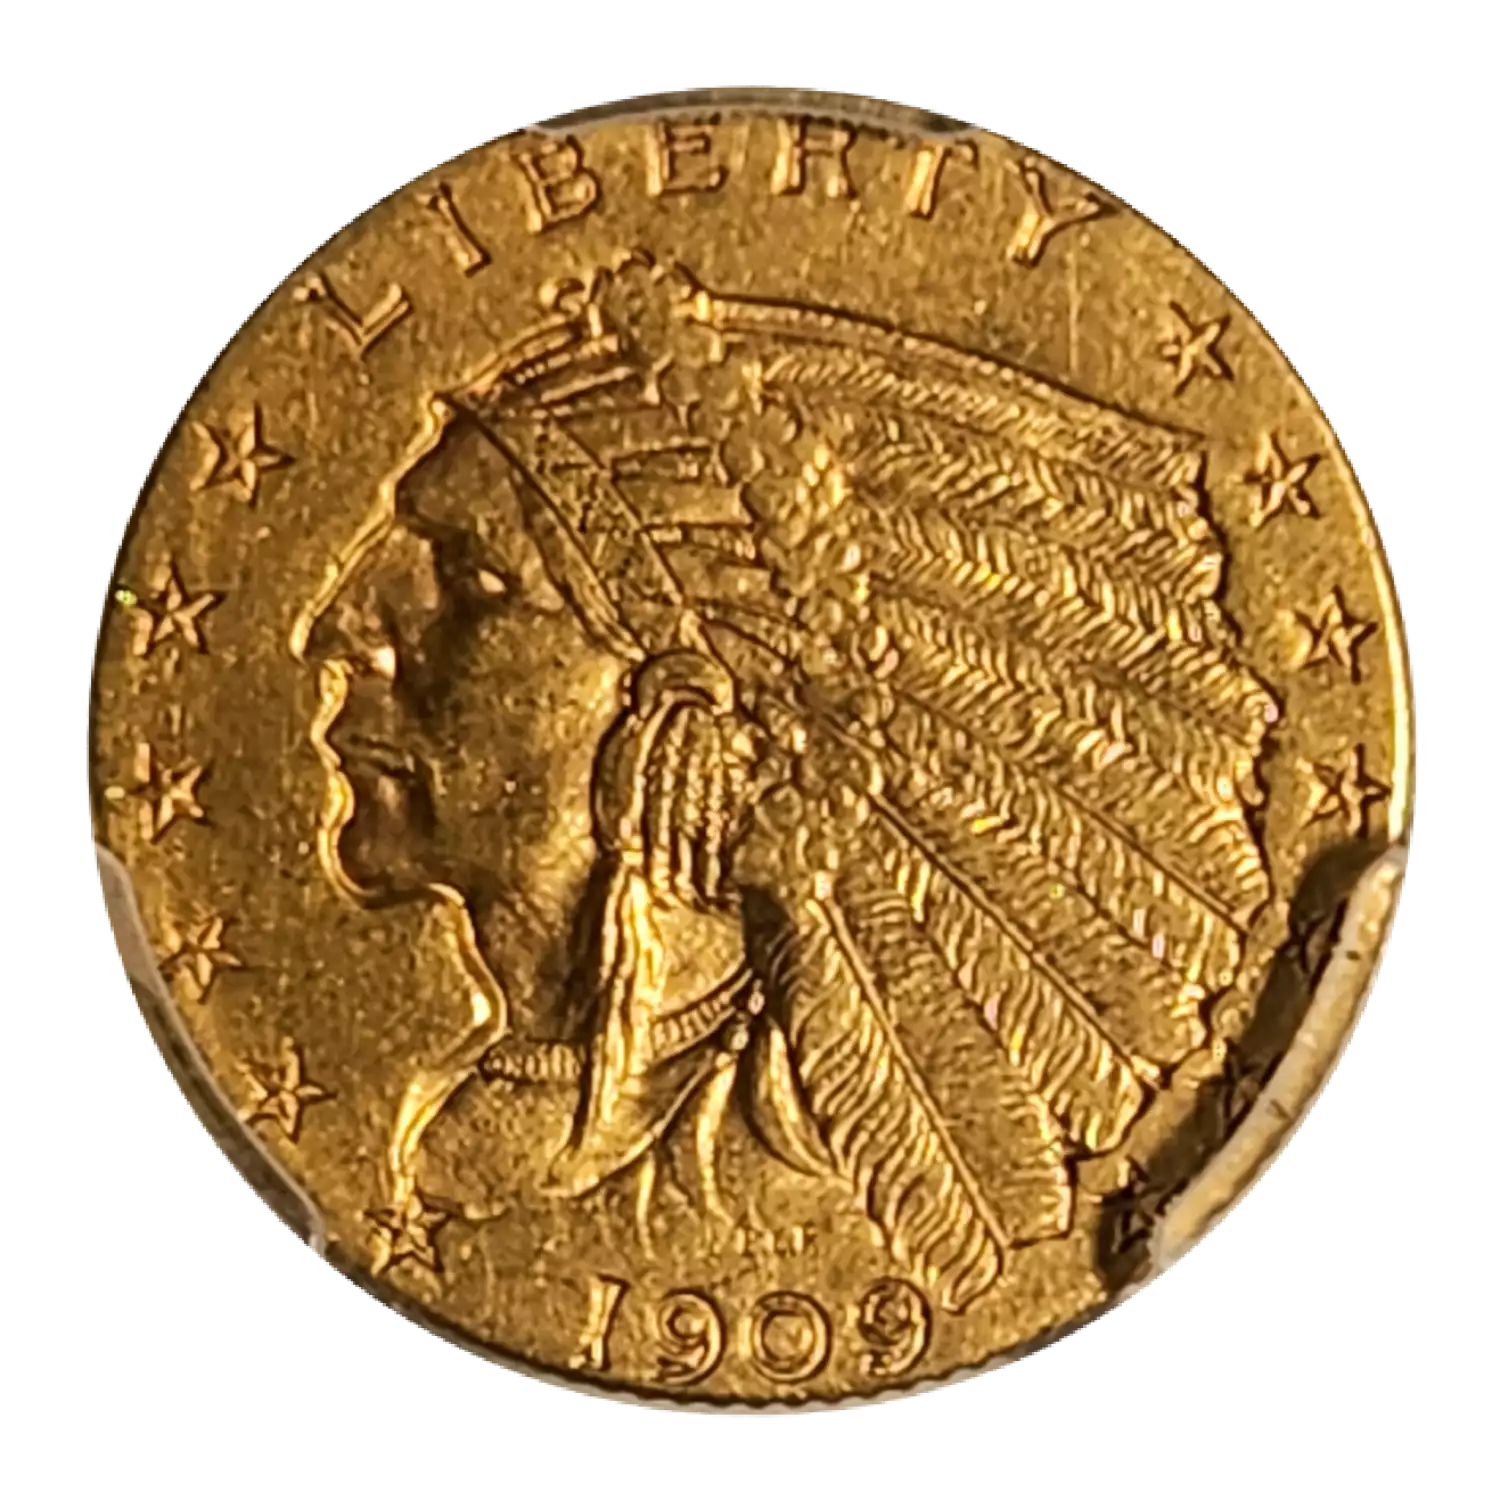 1909 $2.50